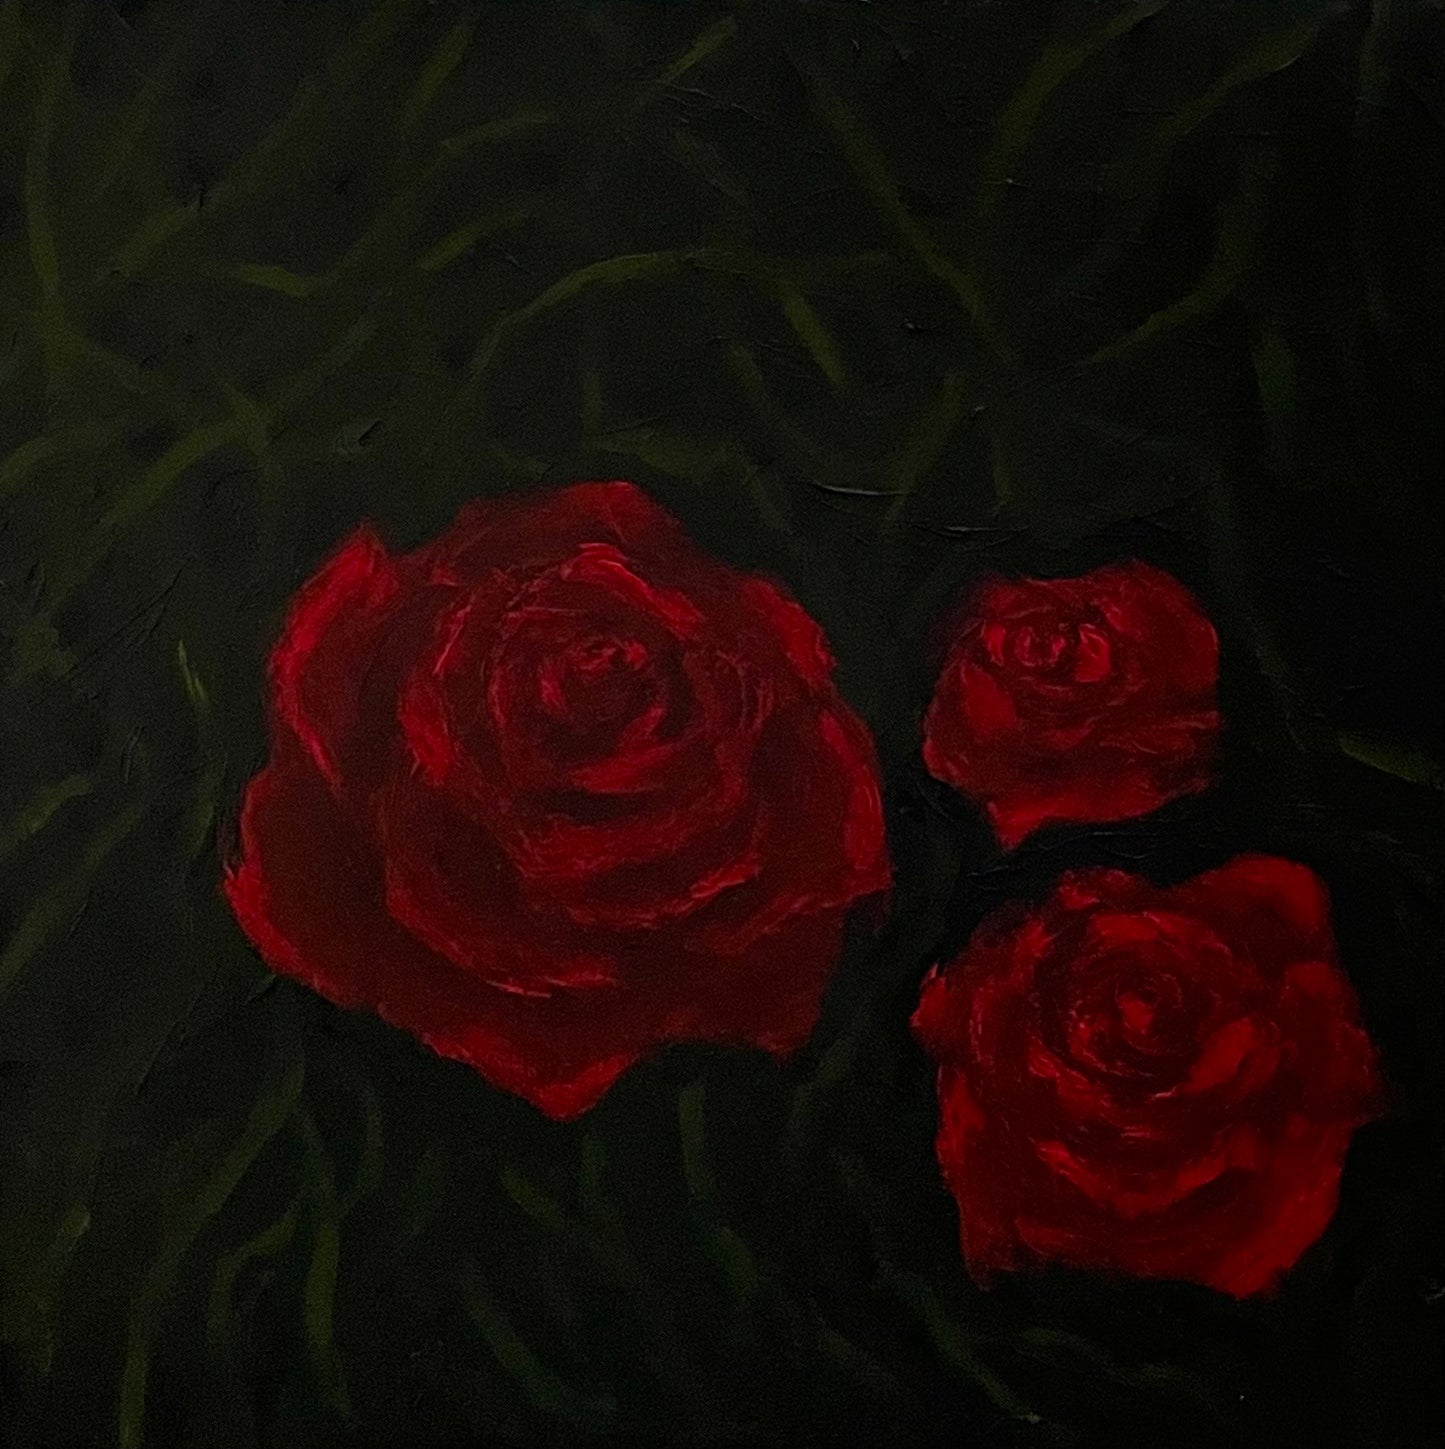 3 Roses in the dark